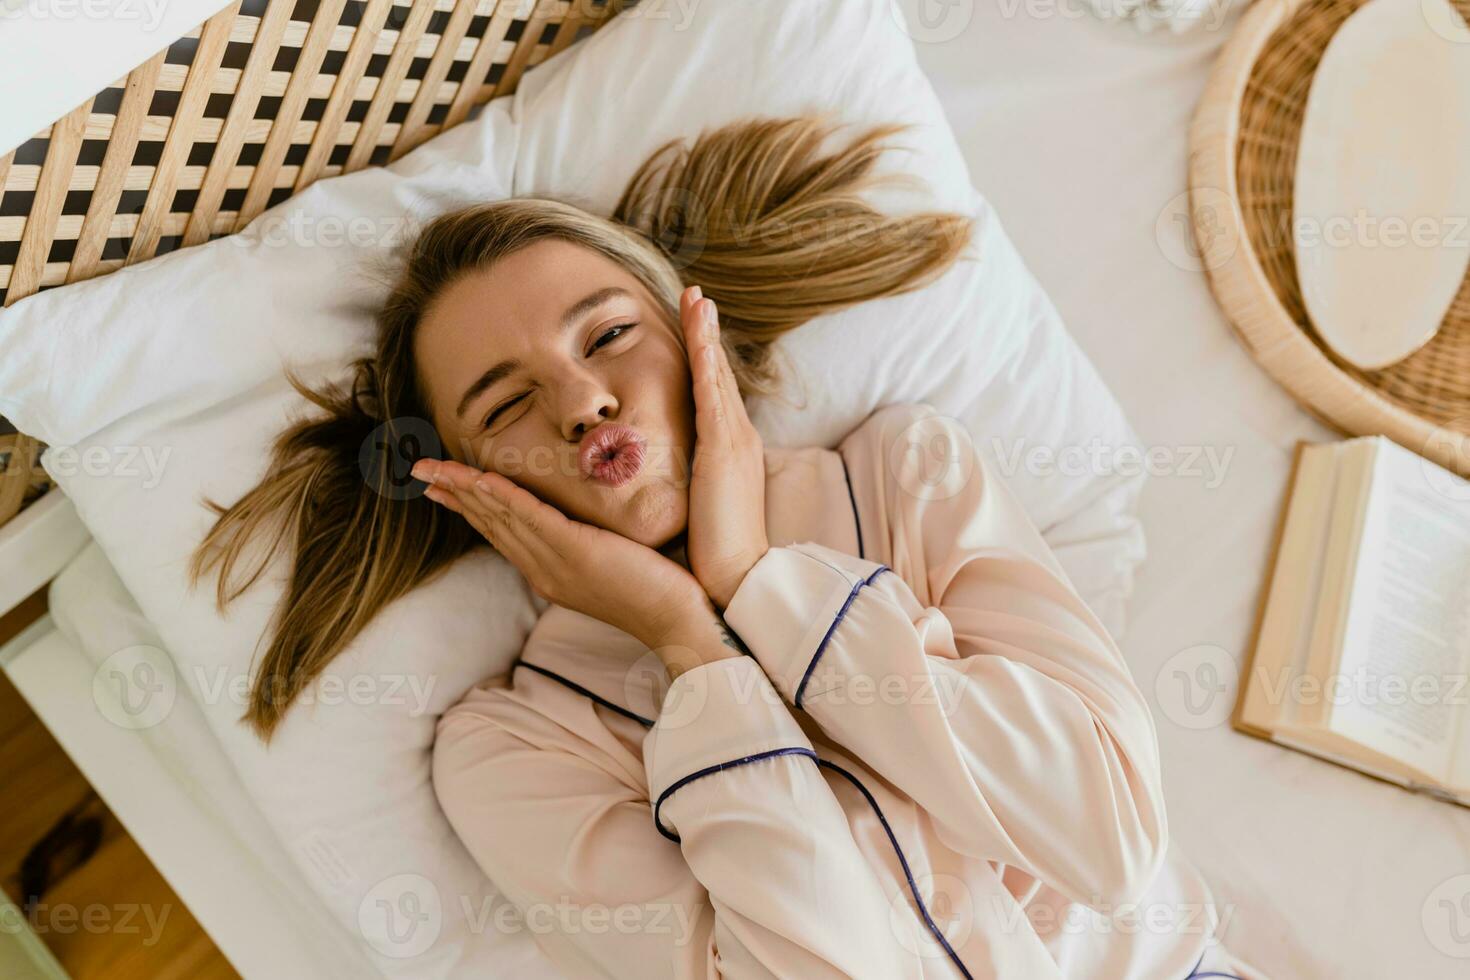 jolie souriant femme relaxant à Accueil sur lit dans Matin dans pyjamas photo